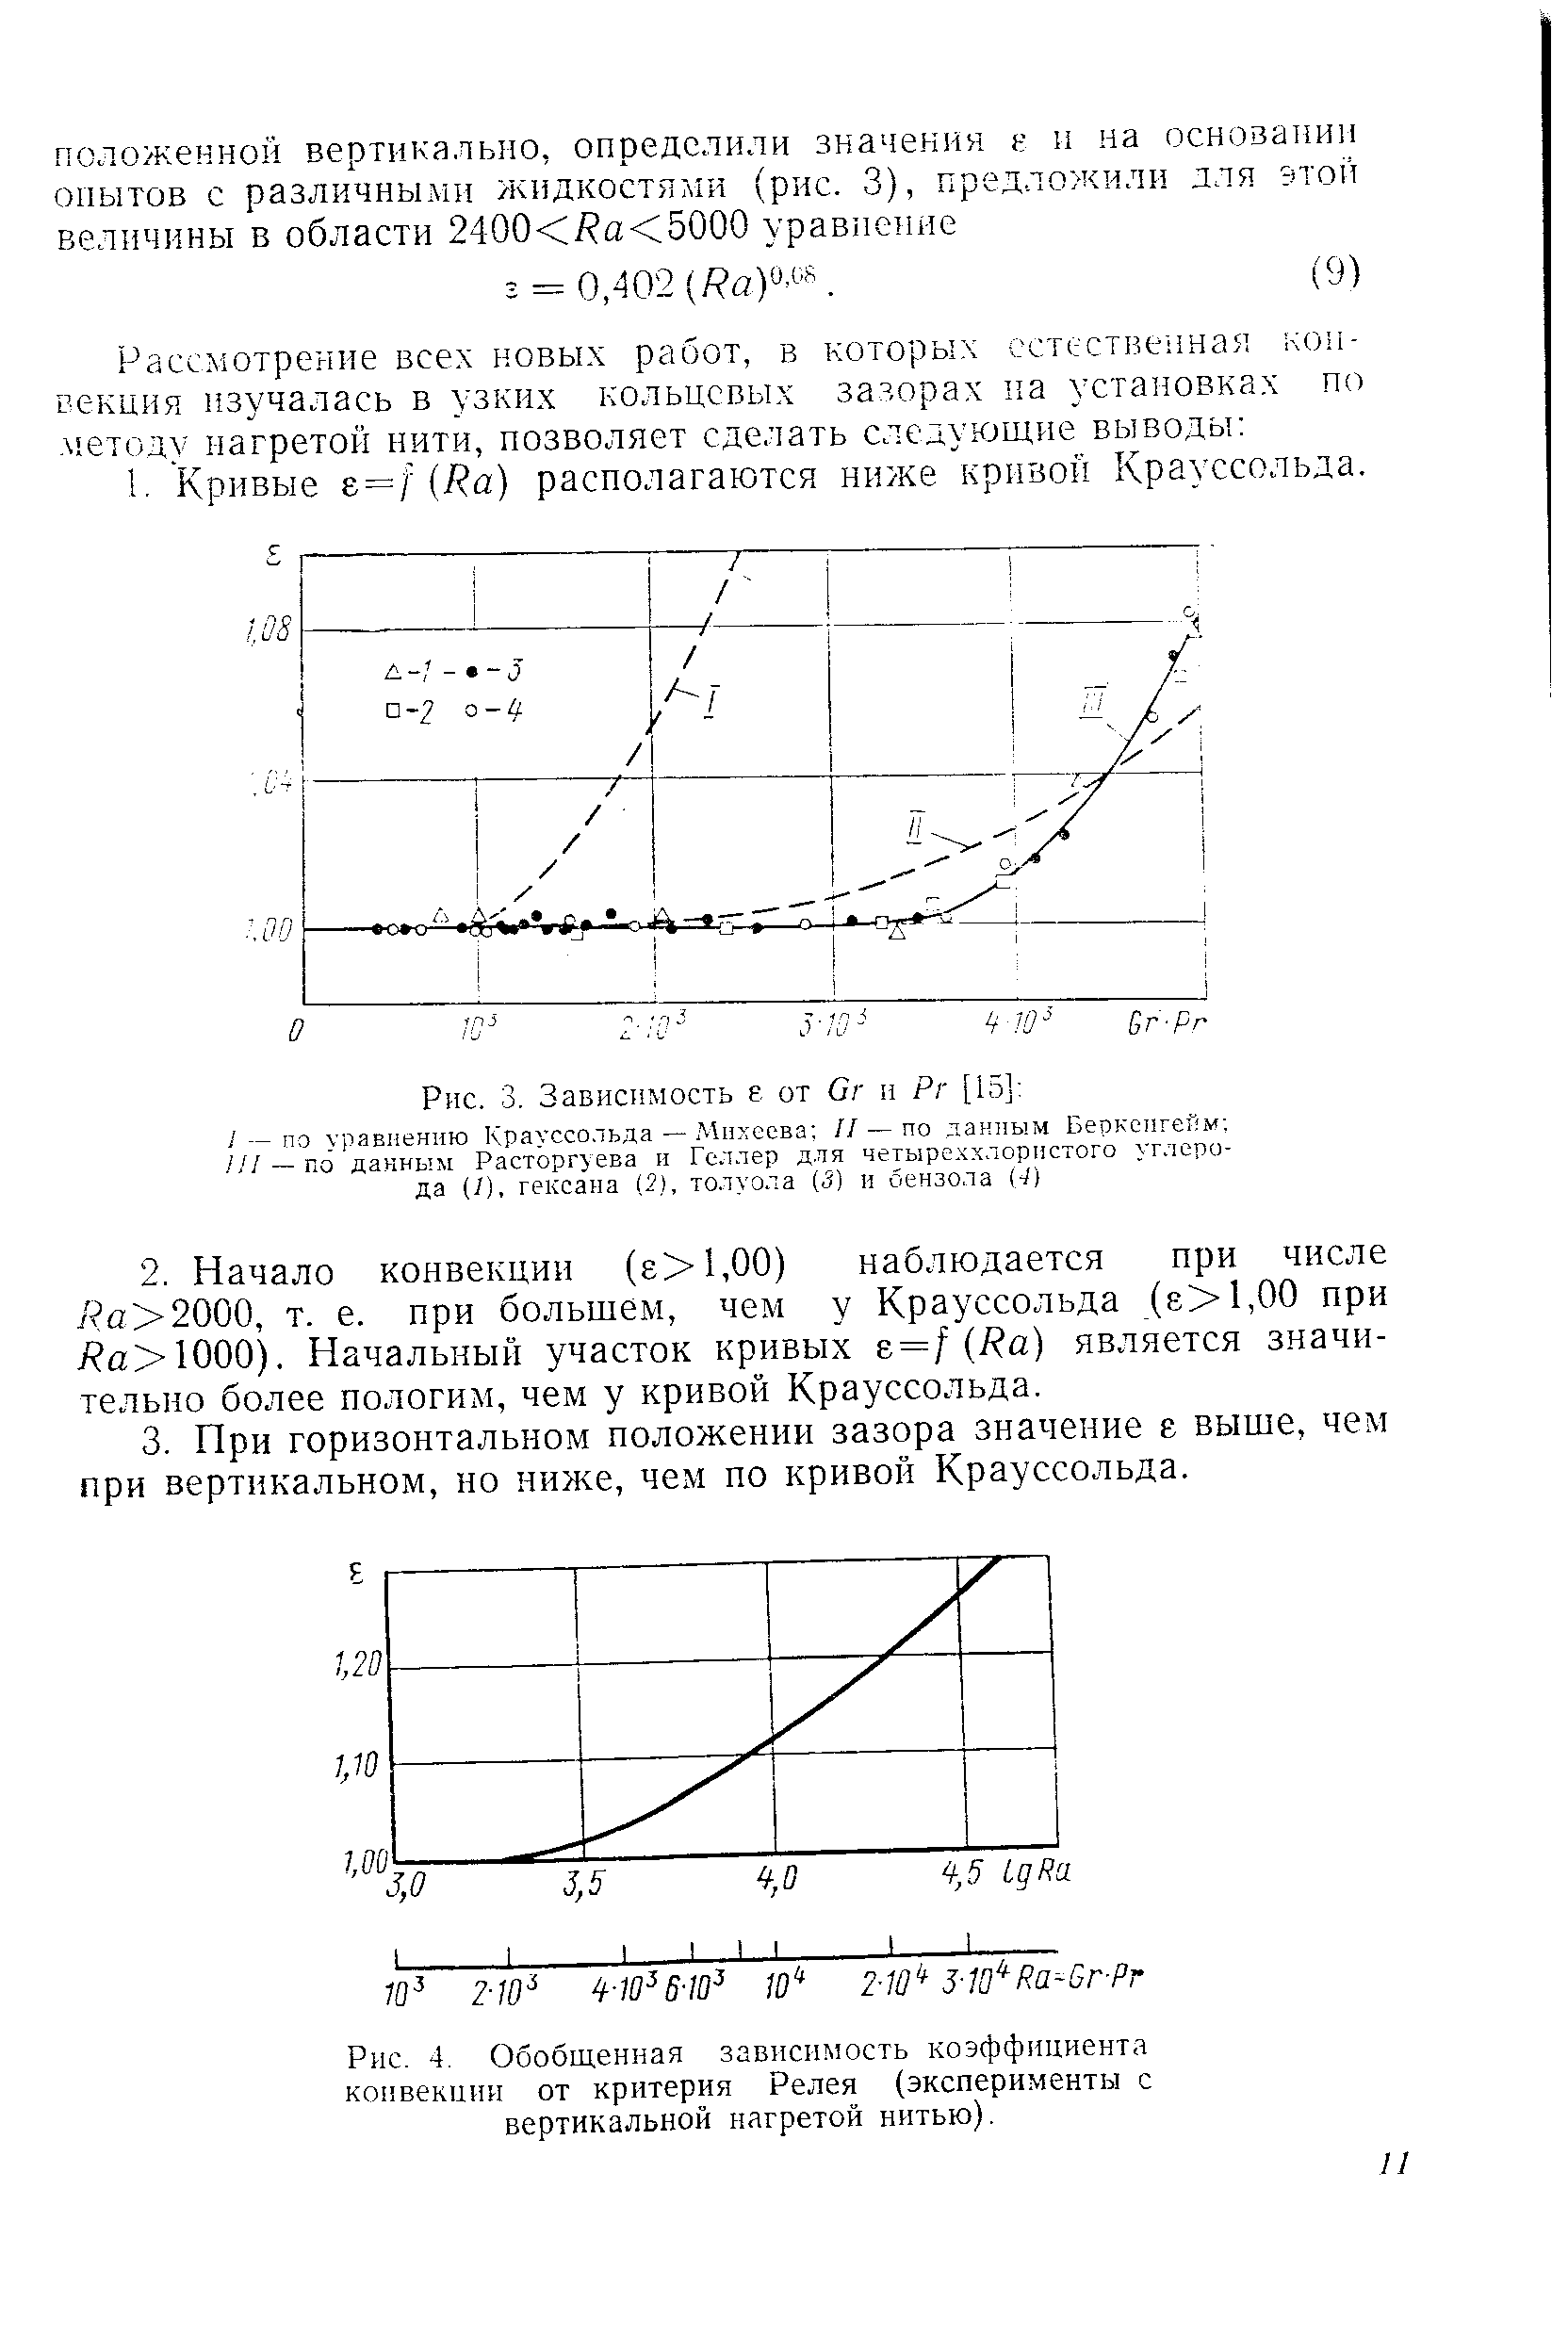 Рис. 4. Обобщенная зависимость коэффициента конвекции от критерия Релея (эксперименты с вертикальной нагретой нитью).
